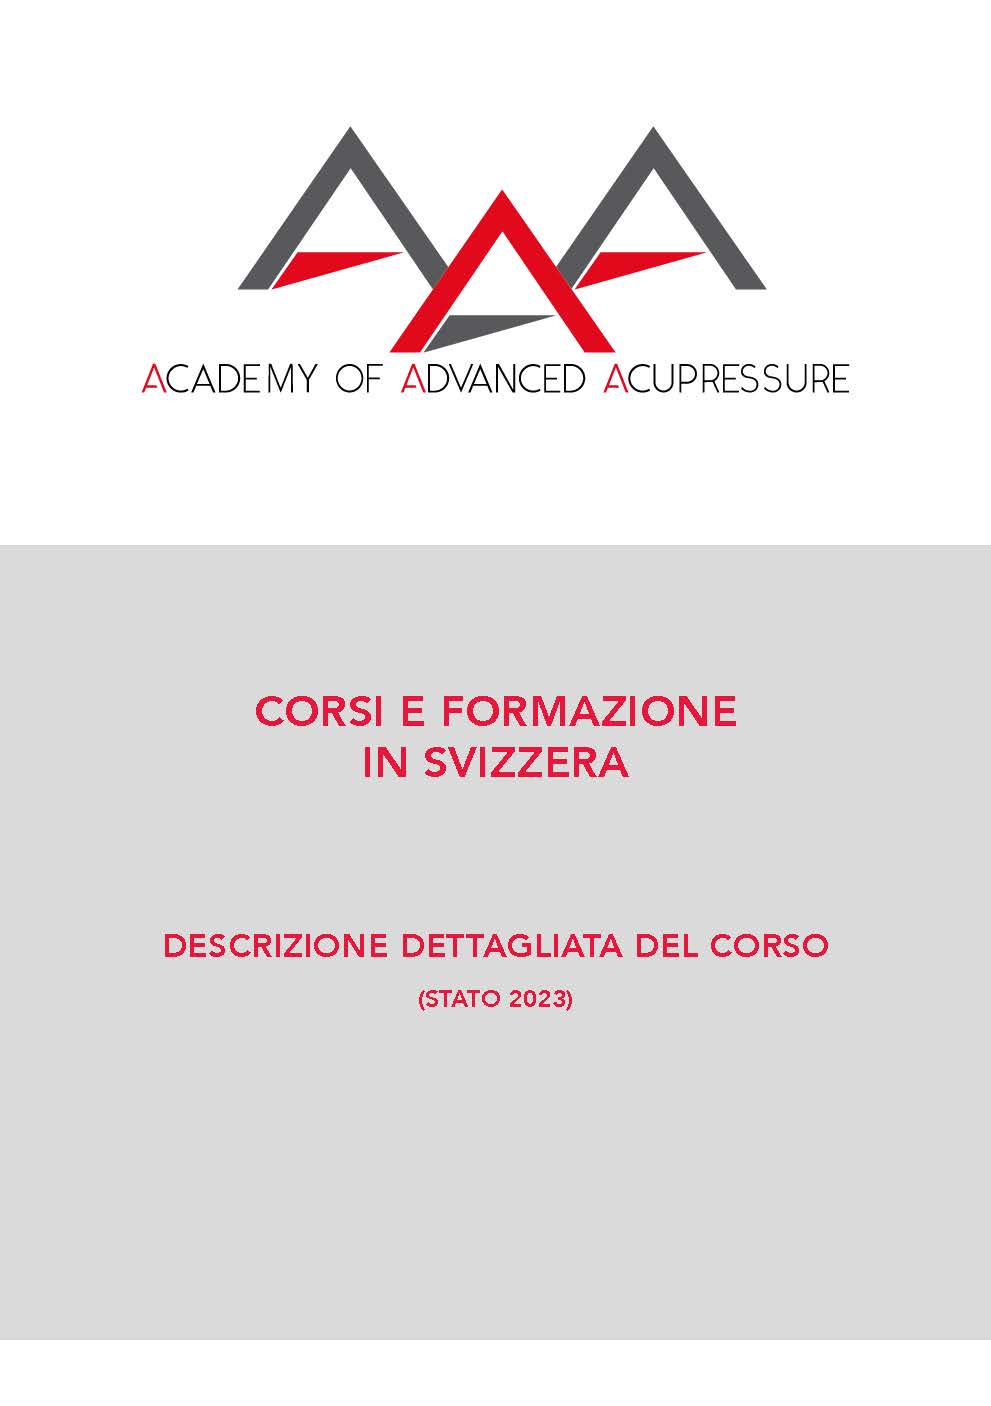 Academy of Advanced Acupressure Descrizione dettagliata del Corso 2023